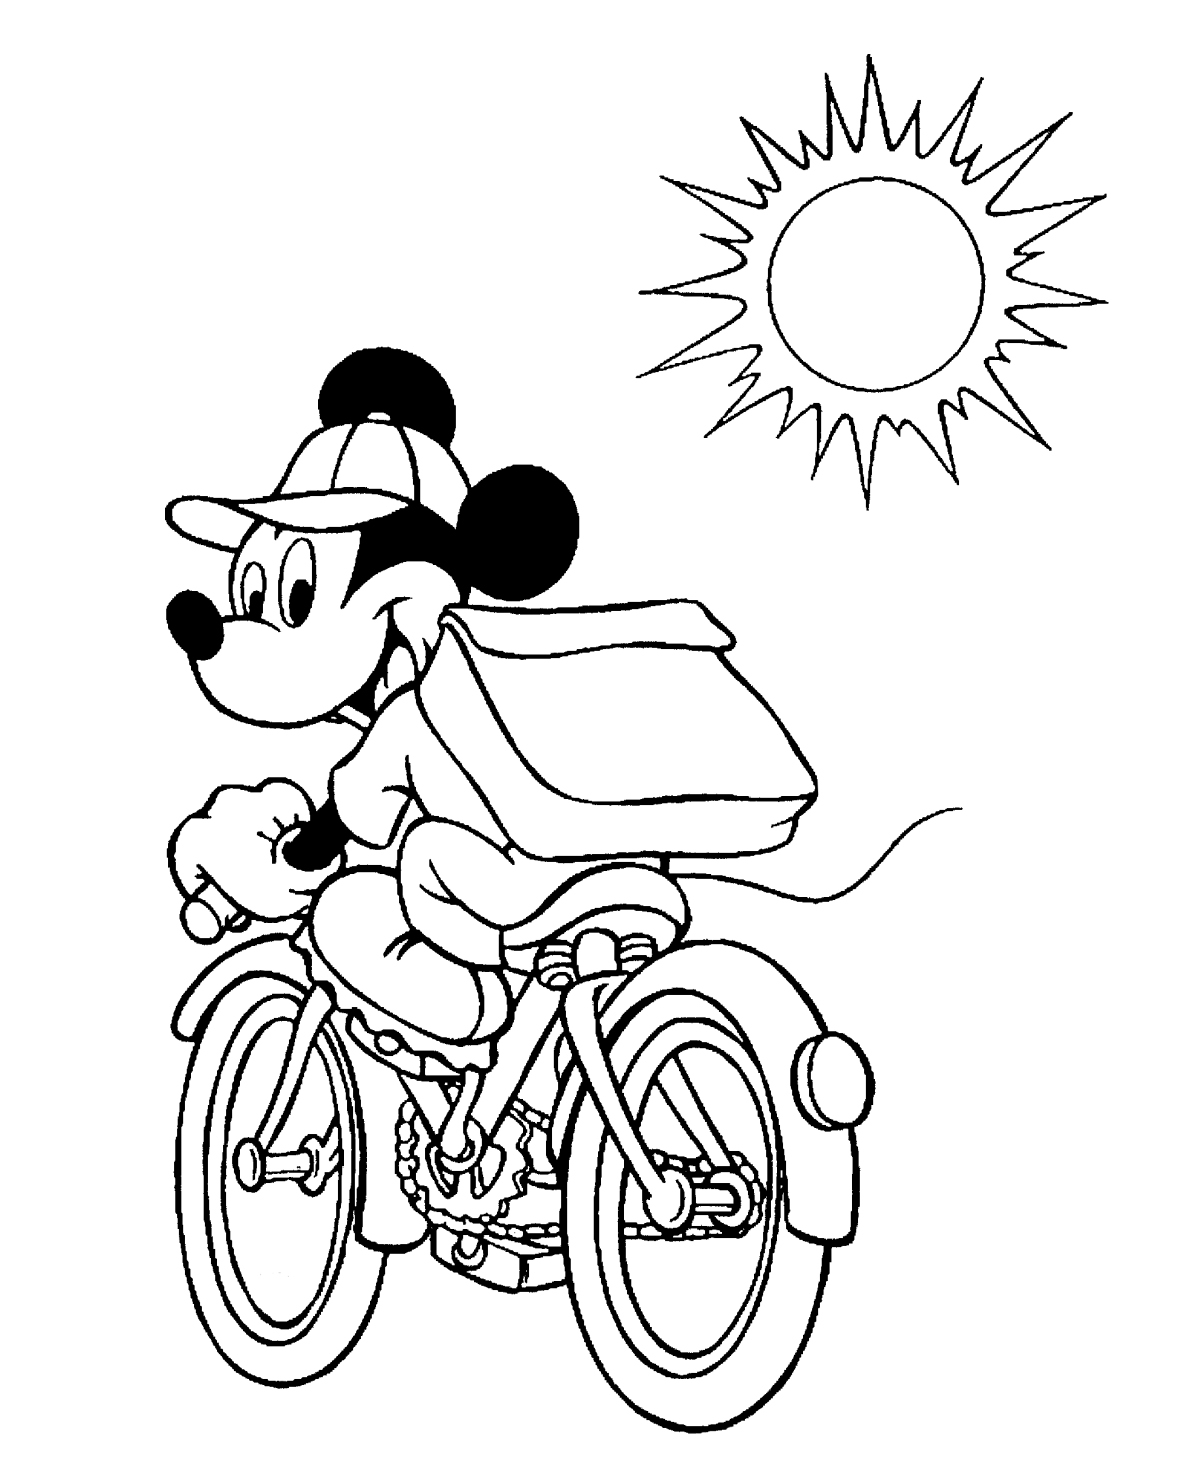 Mickey Mouse pe bicicleta